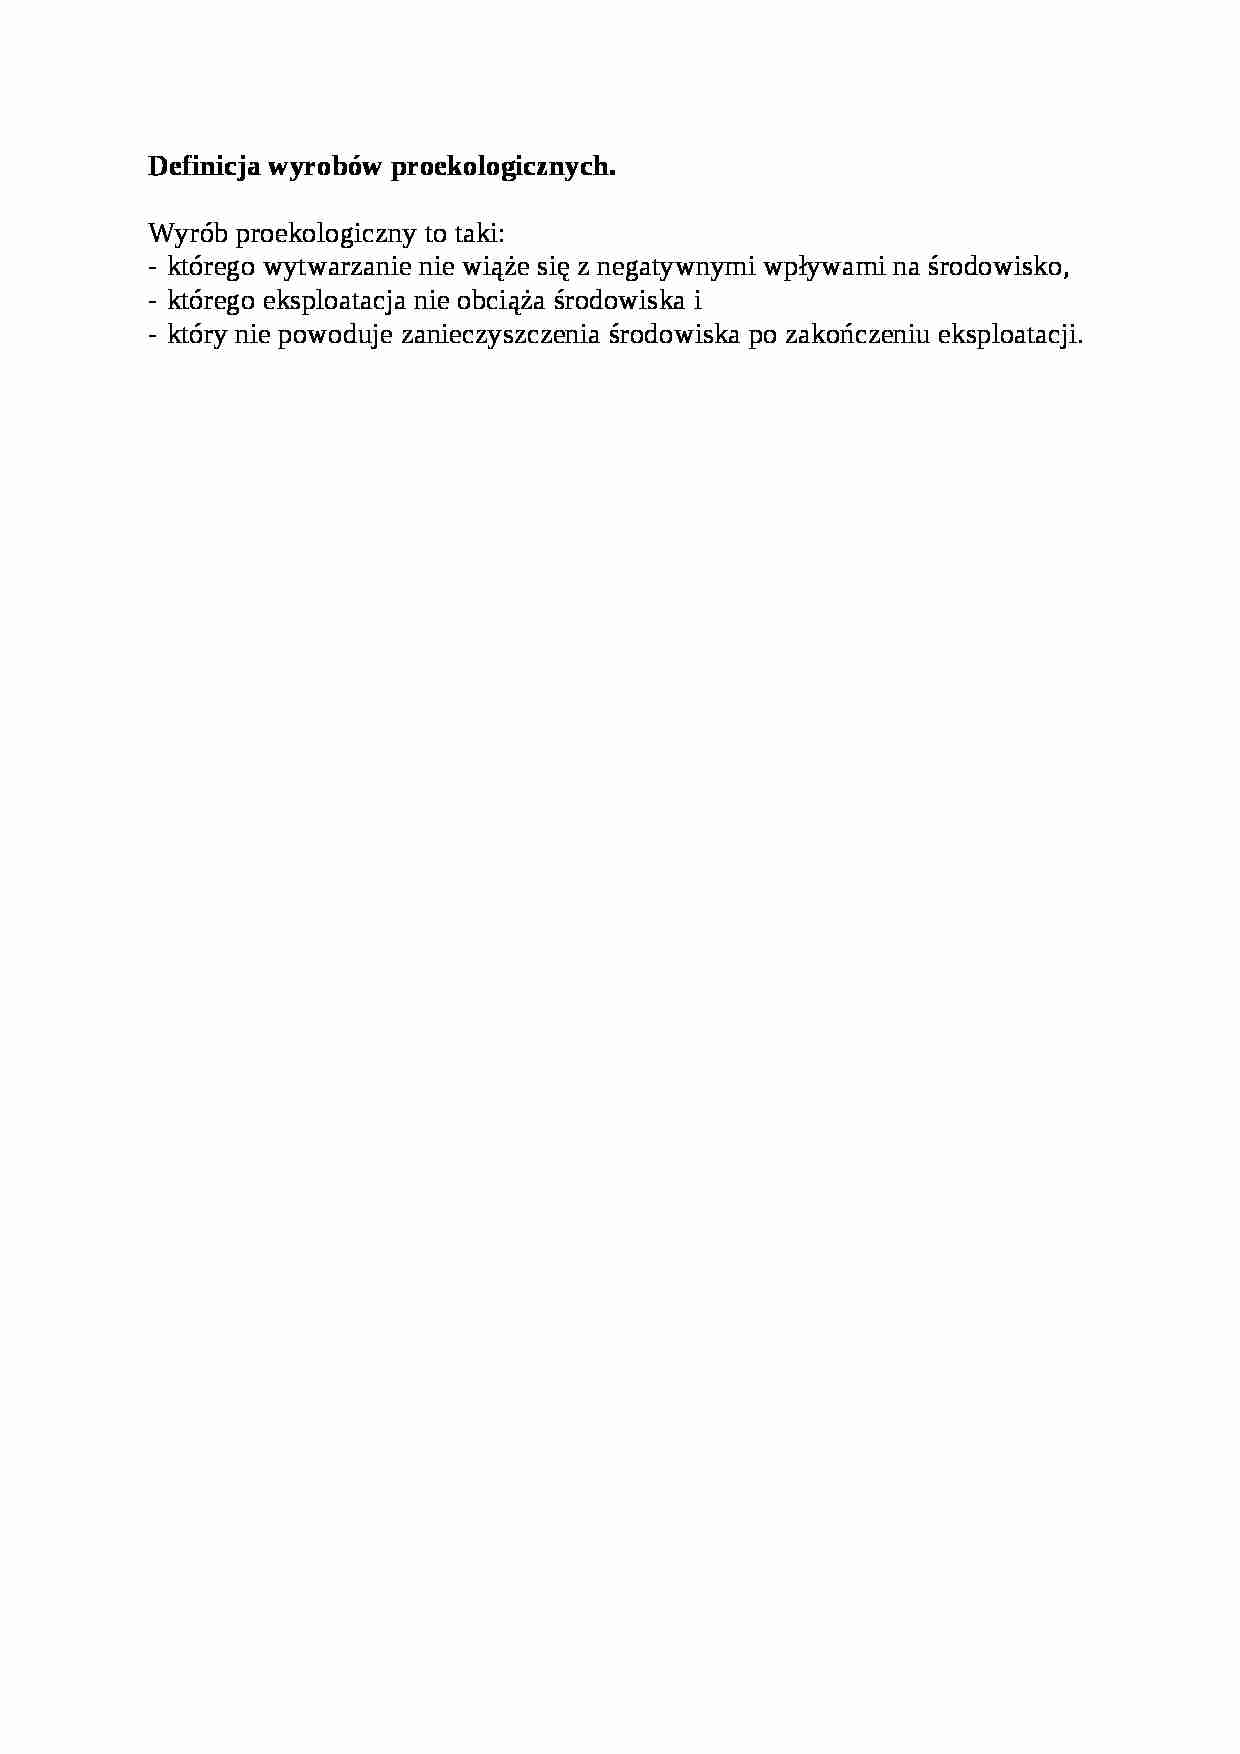 Definicja wyrobów proekologicznych - opracowanie - strona 1